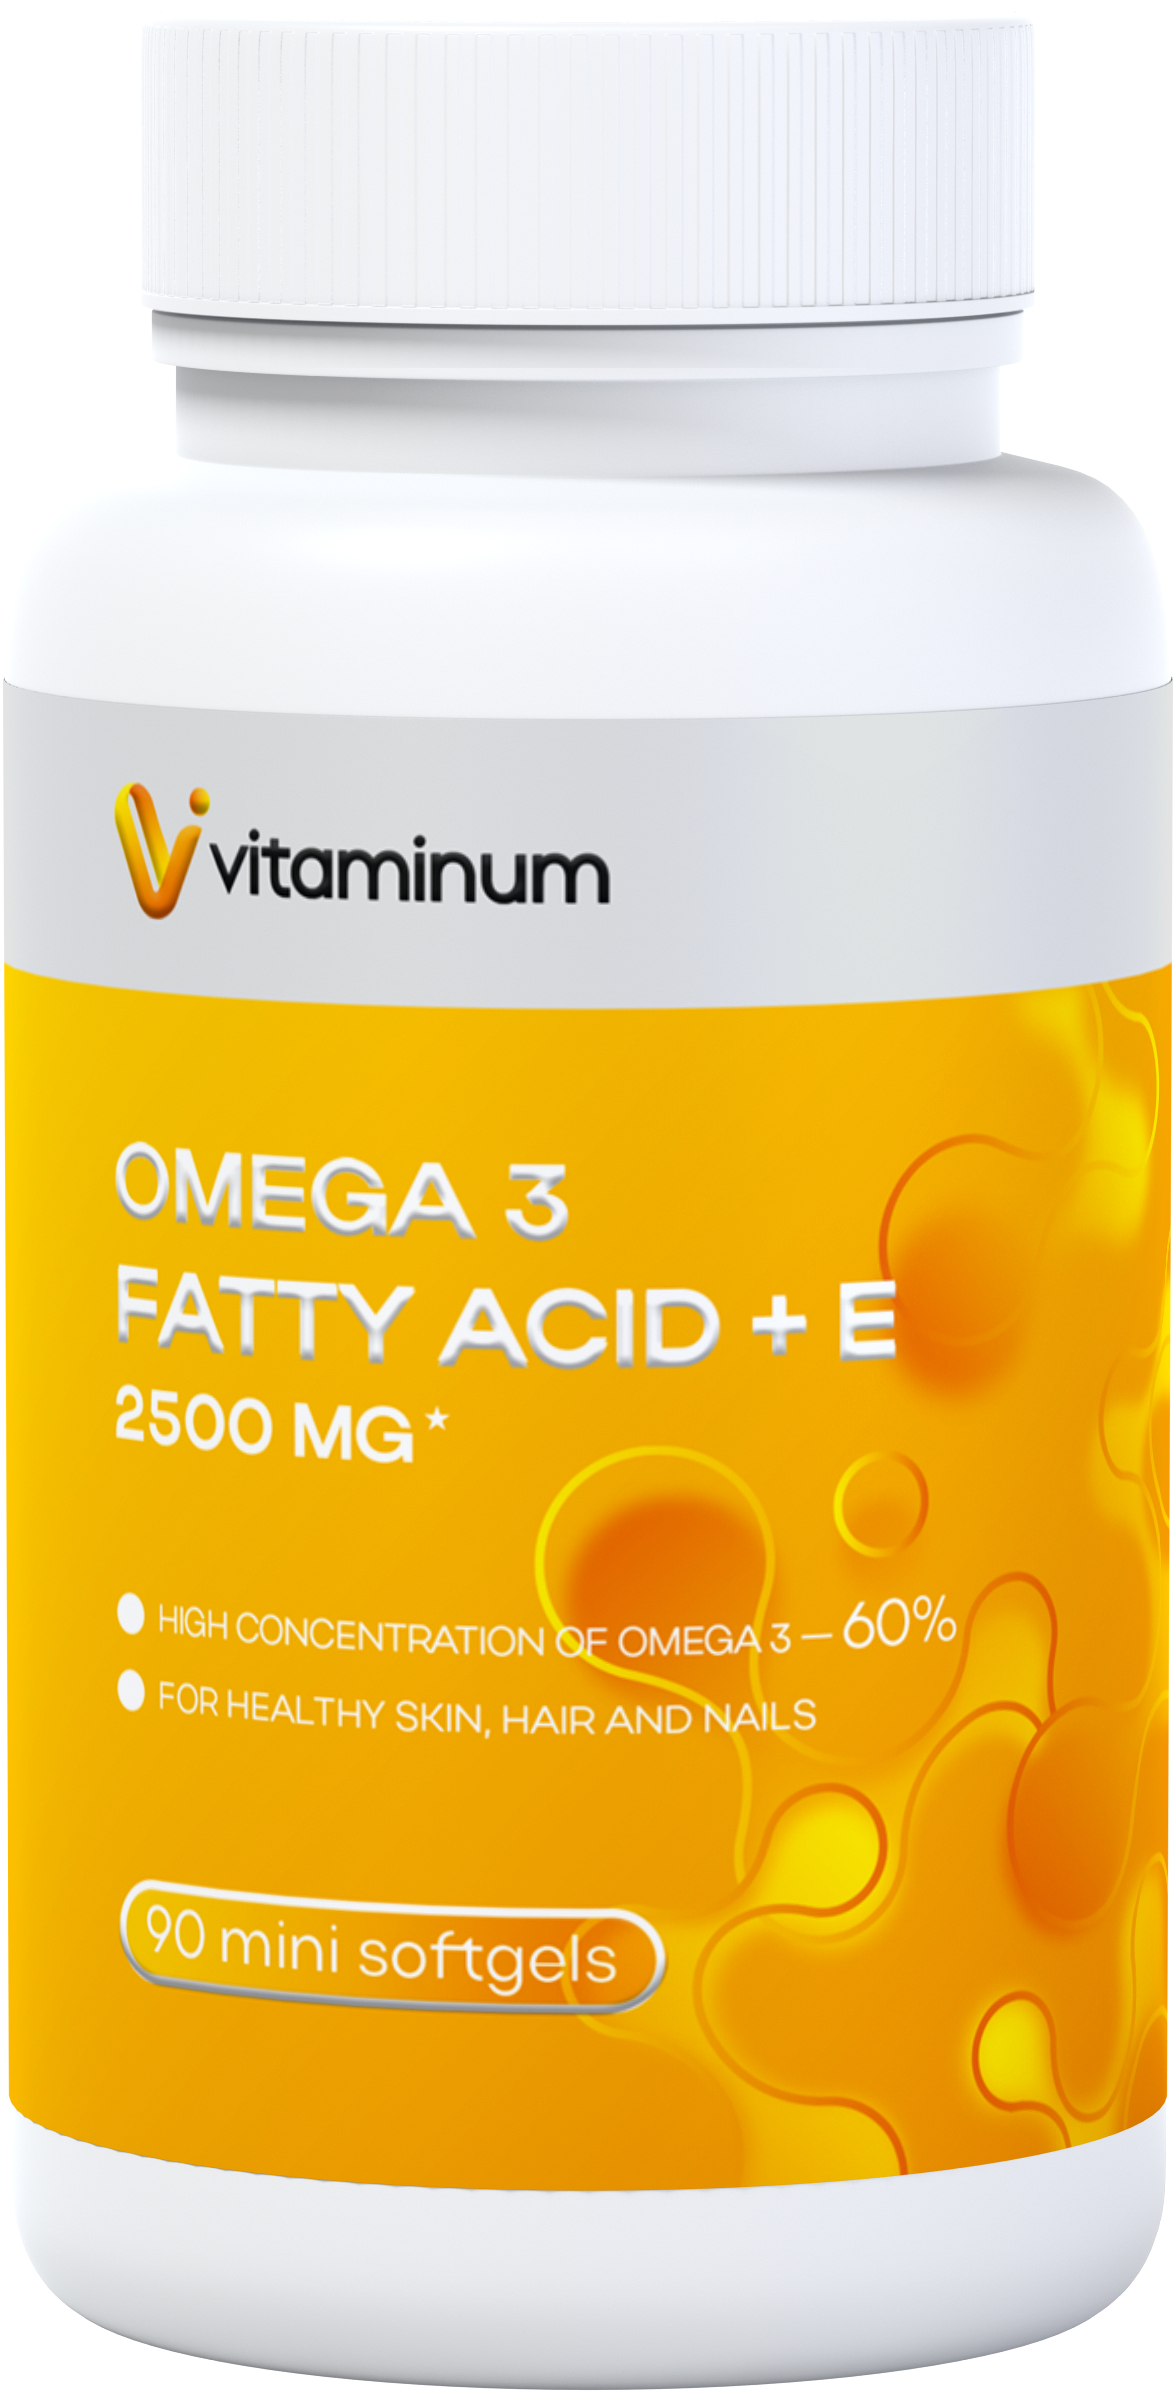  Vitaminum ОМЕГА 3 60% + витамин Е (2500 MG*) 90 капсул 700 мг   в Кондопоге